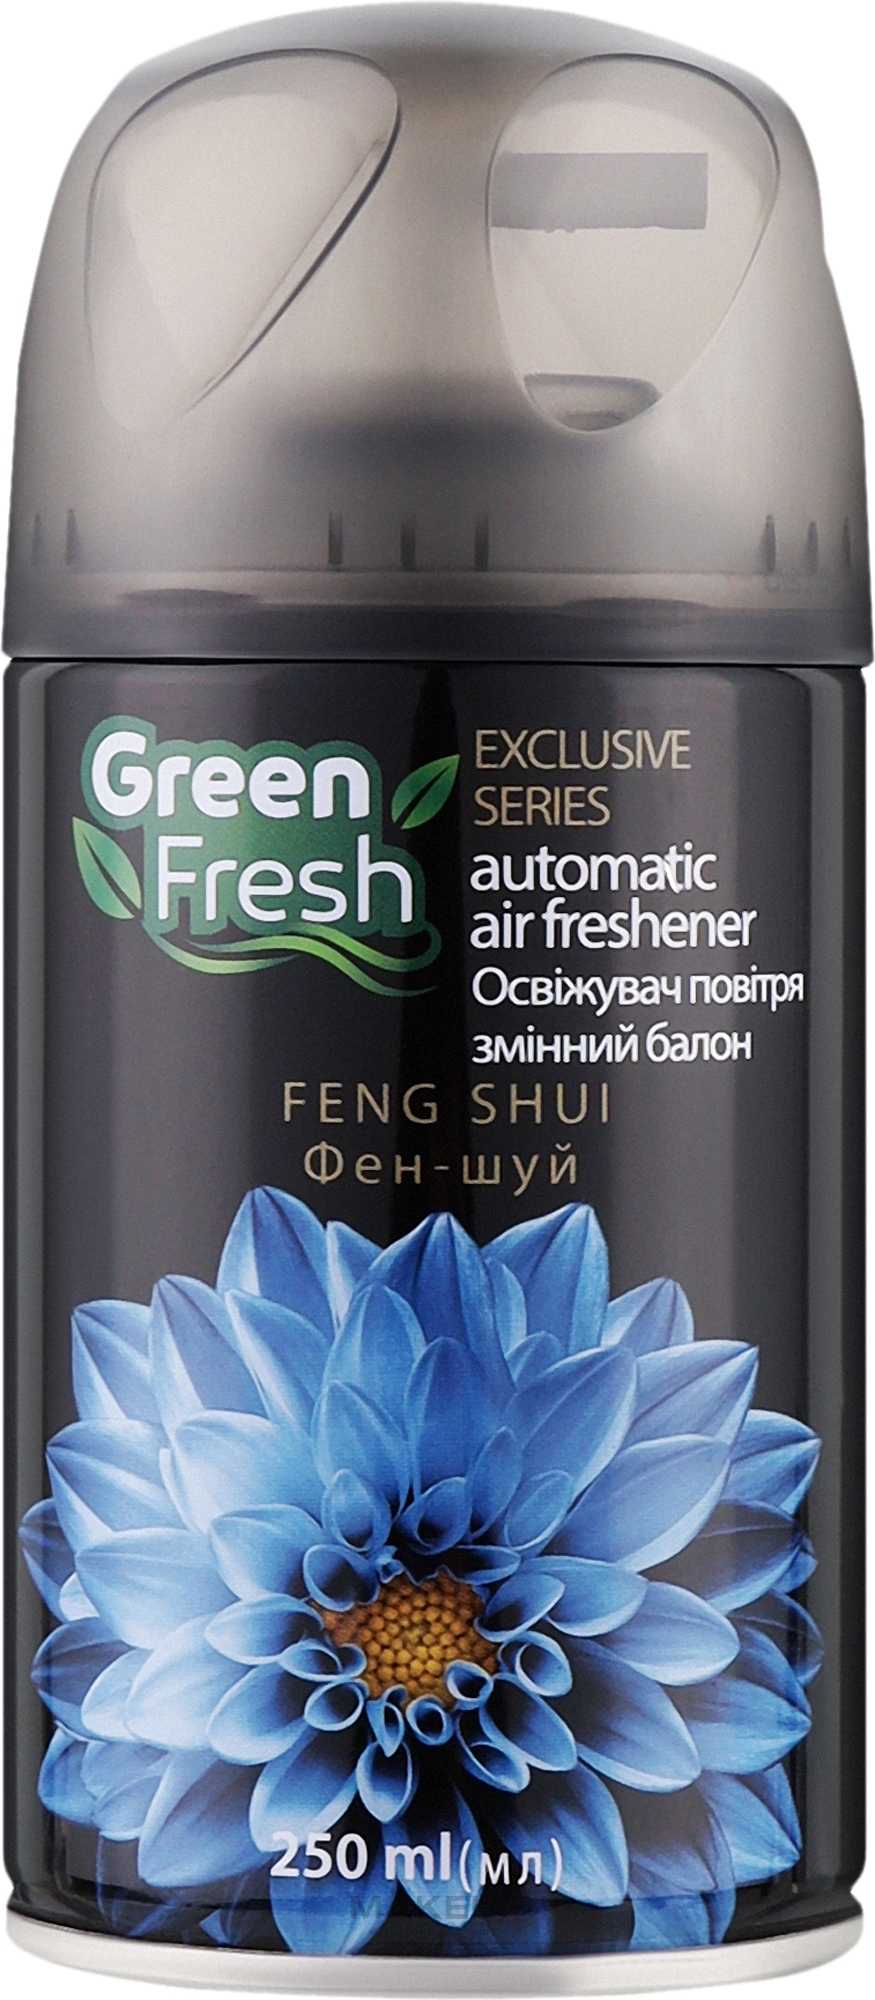 Сменный баллон для автоматического освежителя воздуха "Фэншуй" - Green Fresh Automatic Air Freshener Feng Shui — фото 250ml